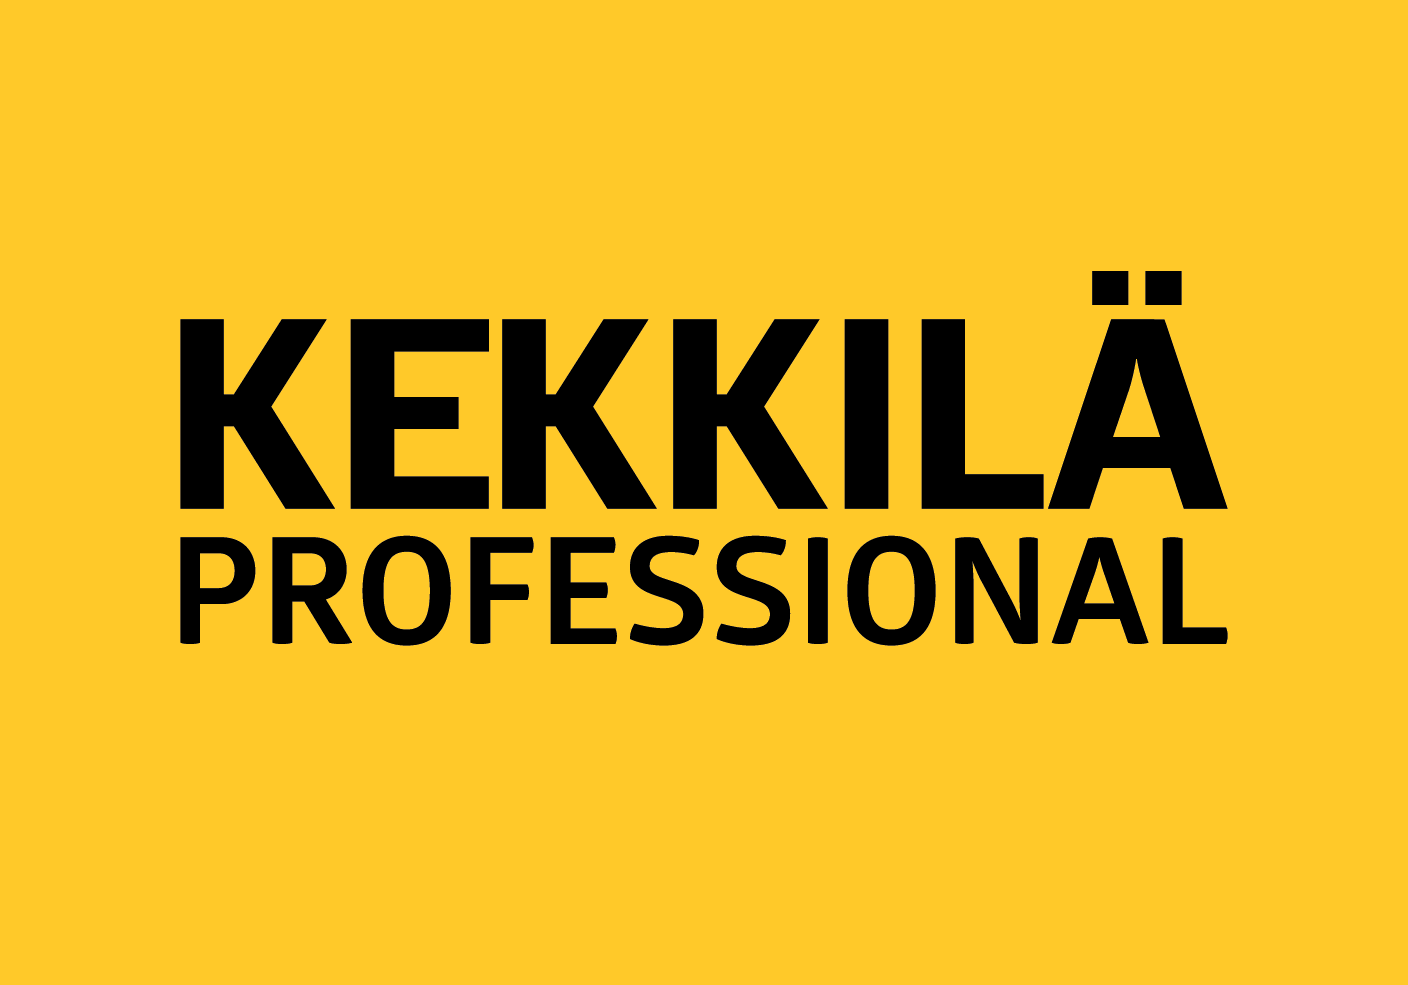 Kekkilä_Professional_logo